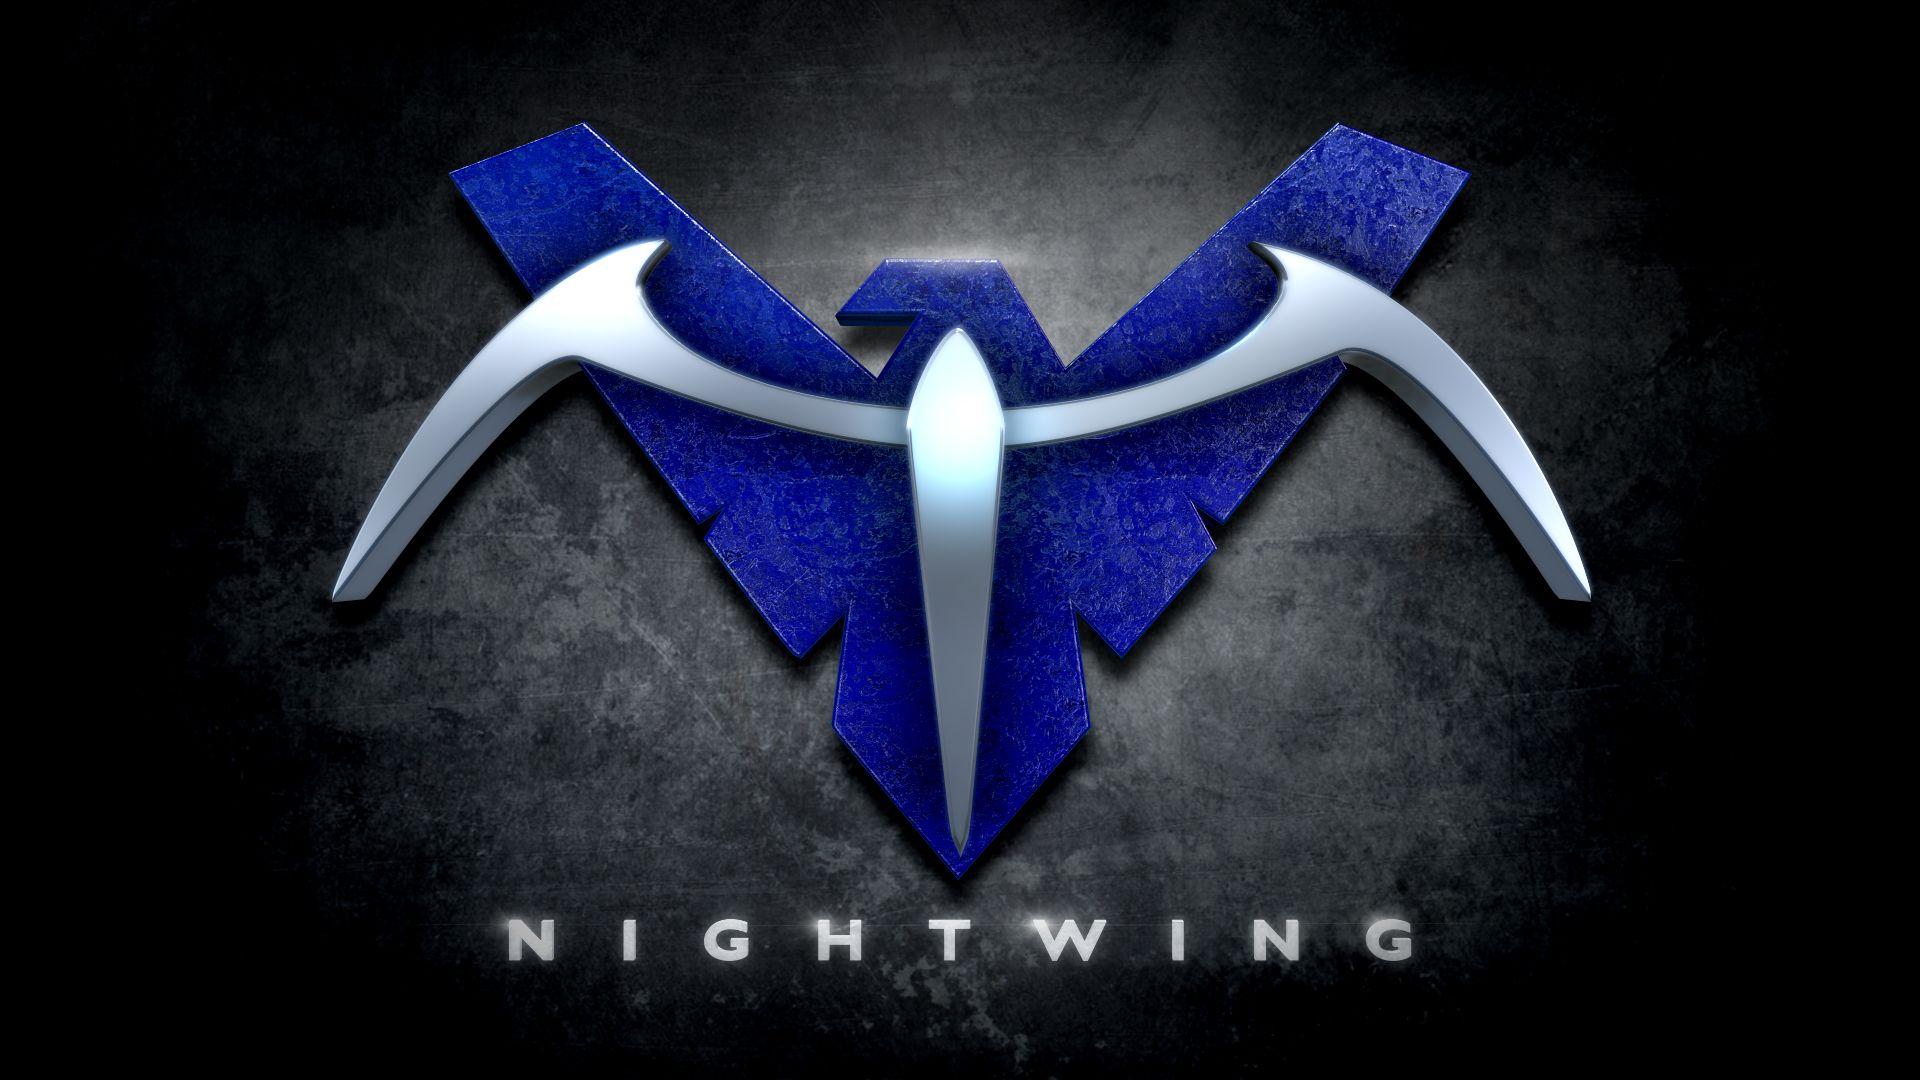 1920x1080 Hình nền Logo Nightwing - 1920x1080 - Tải xuống Hình nền HD